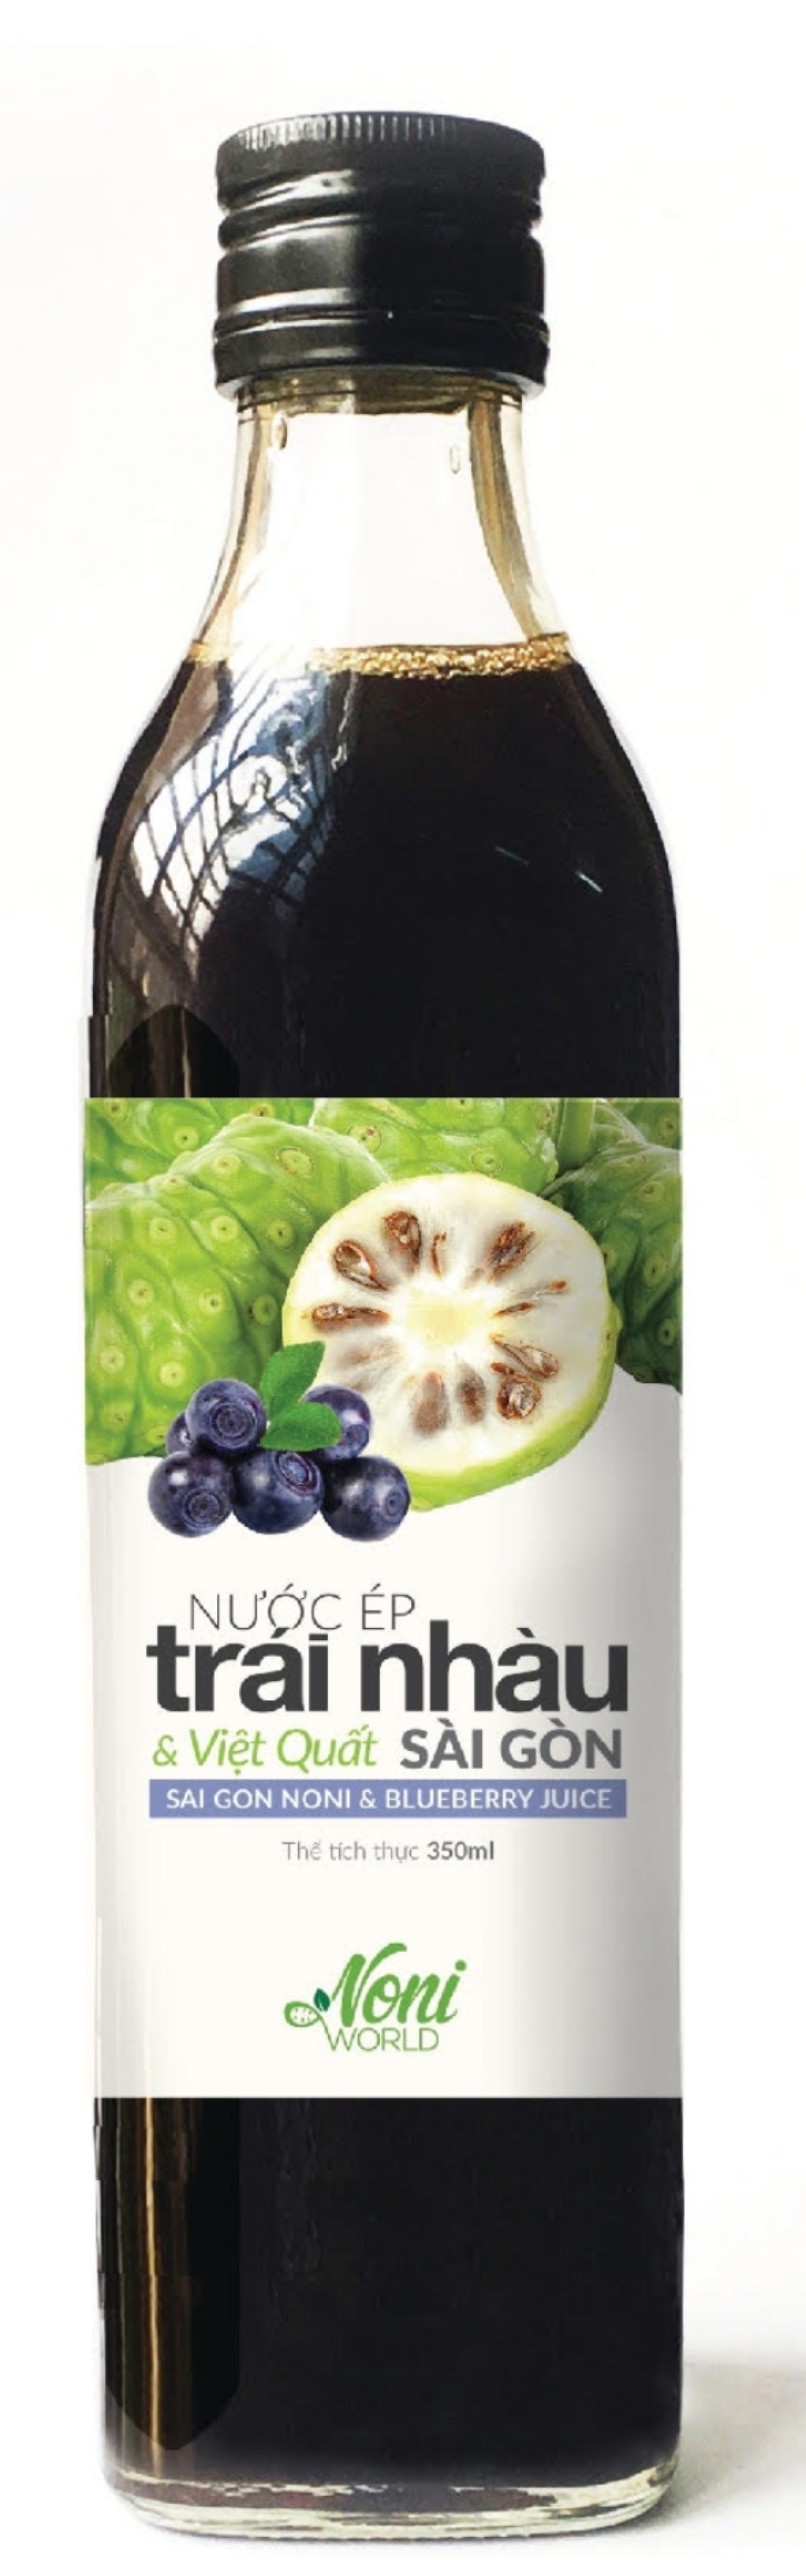 Hình ảnh Noni & blueberry juice - Nước ép trái nhàu và việt quất